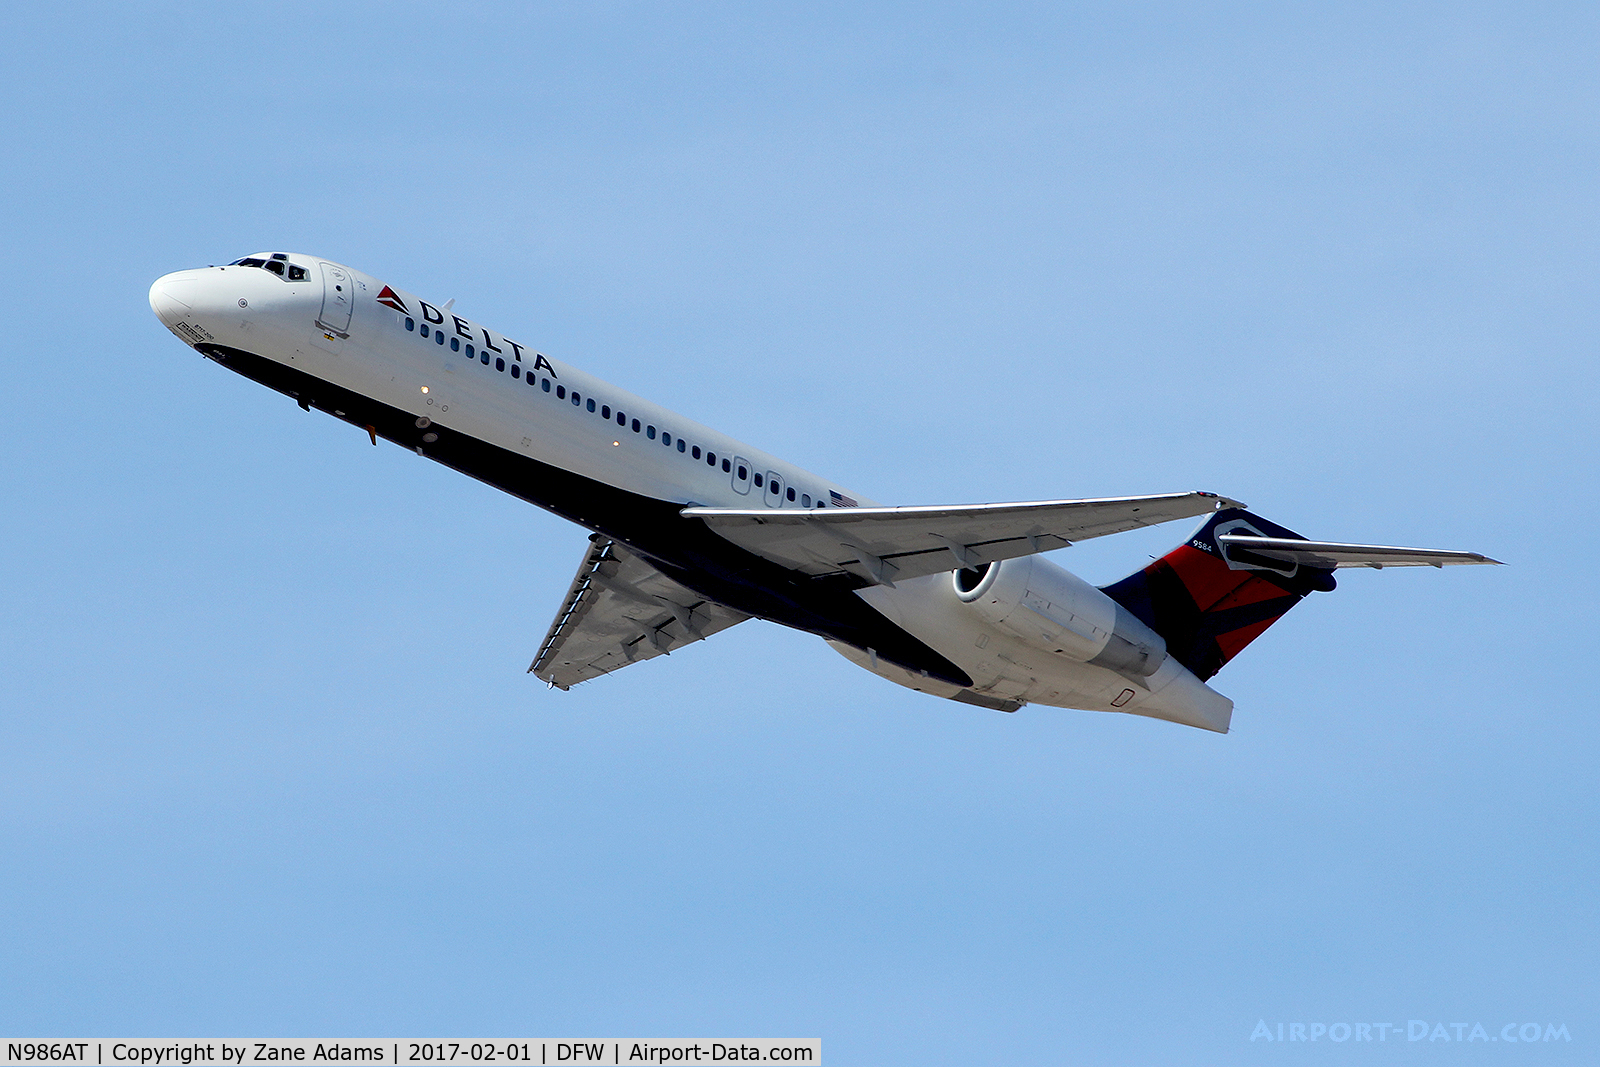 N986AT, 2001 Boeing 717-200 C/N 55089, Departing DFW Airport